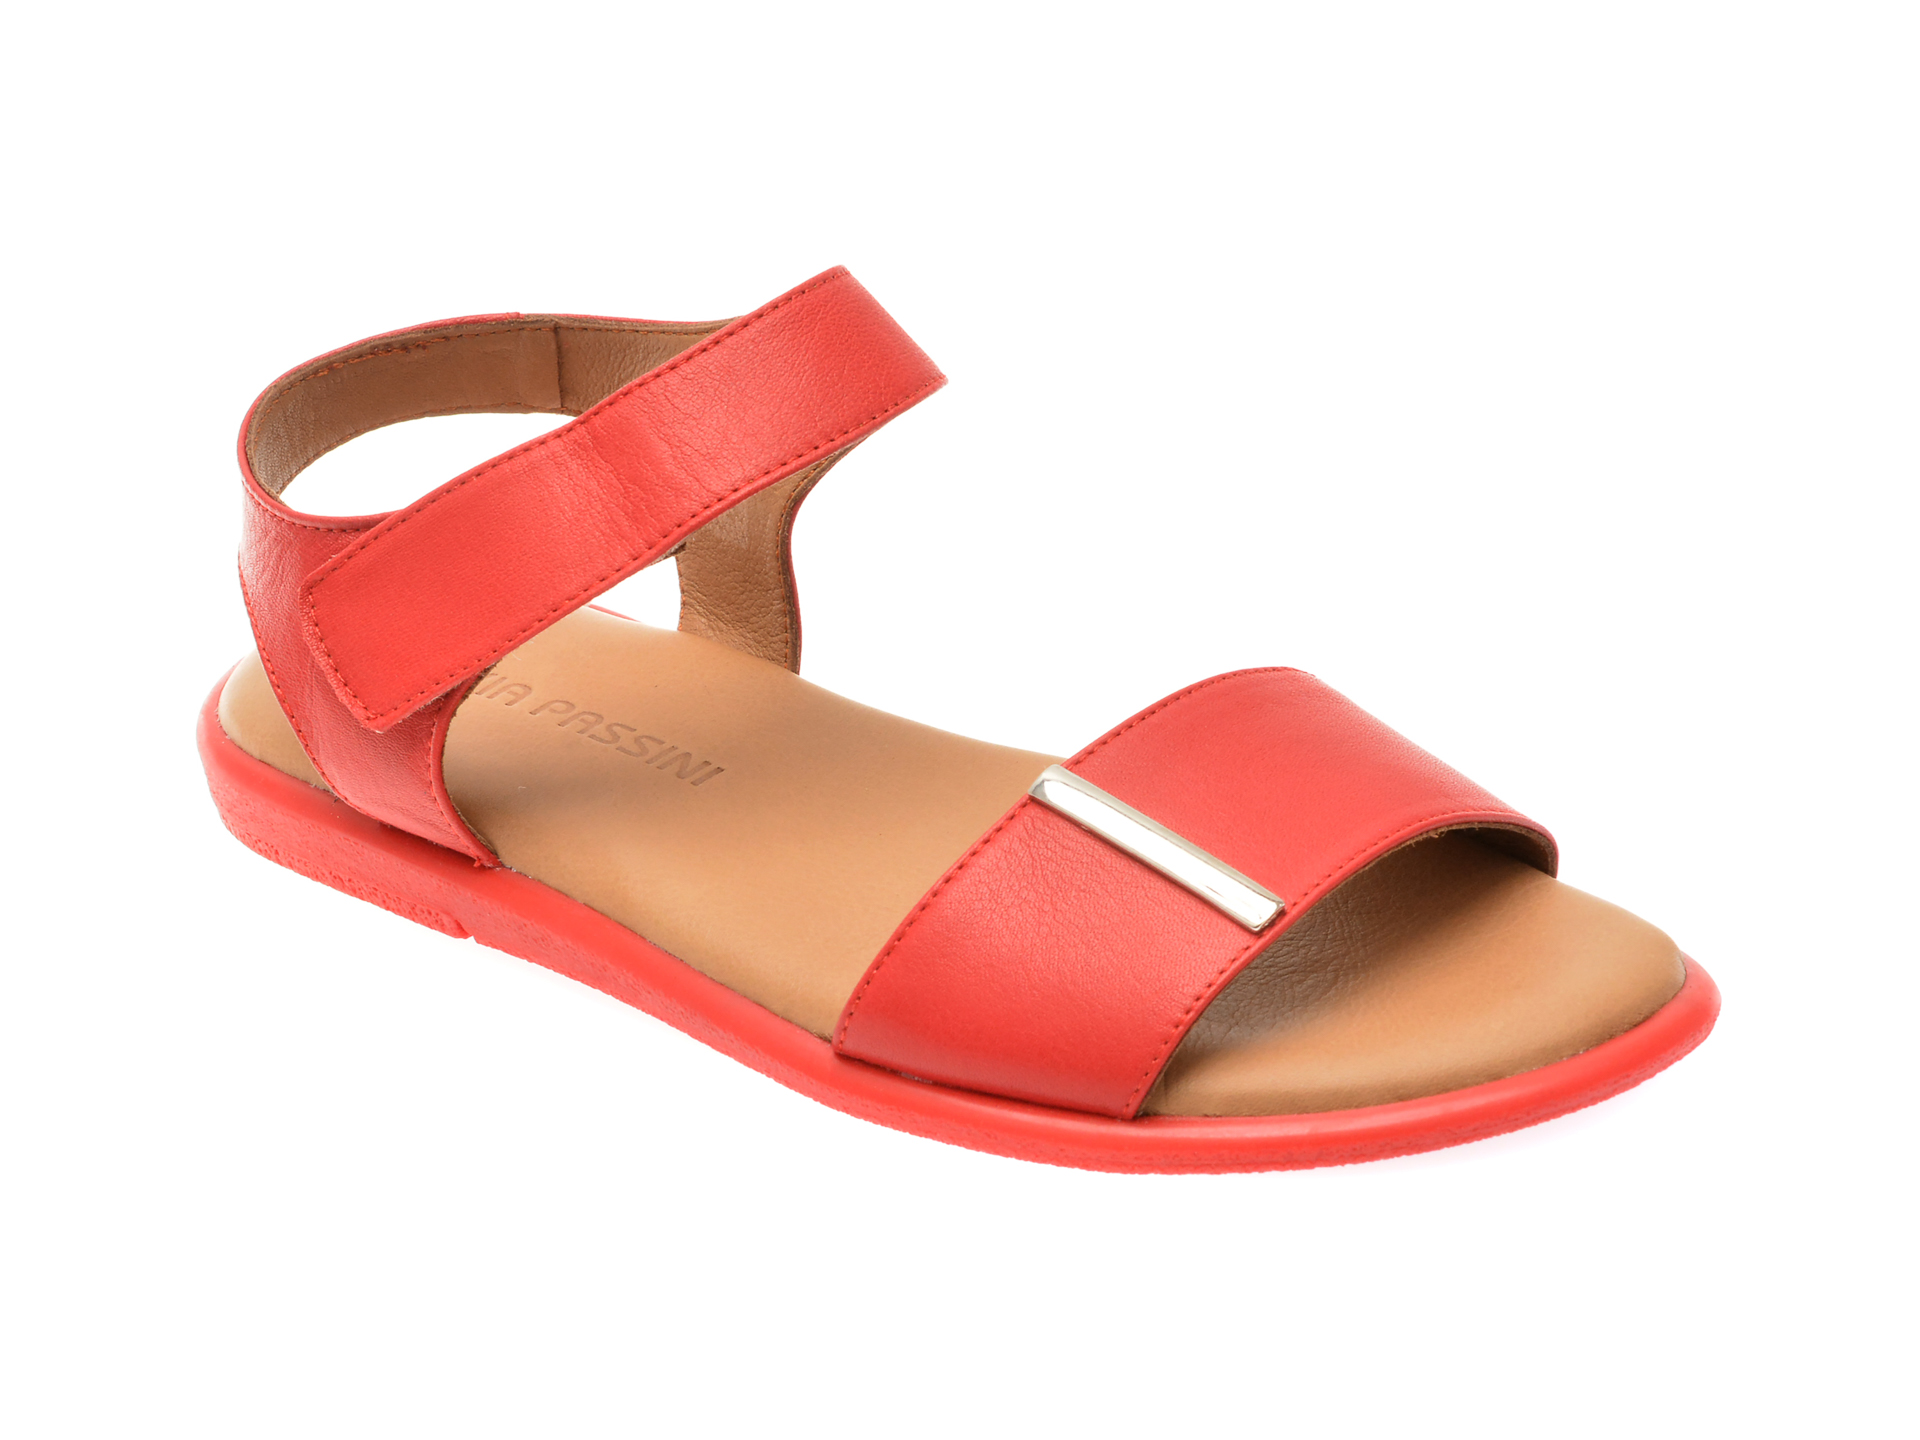 Sandale casual FLAVIA PASSINI rosii, 883901, din piele naturala